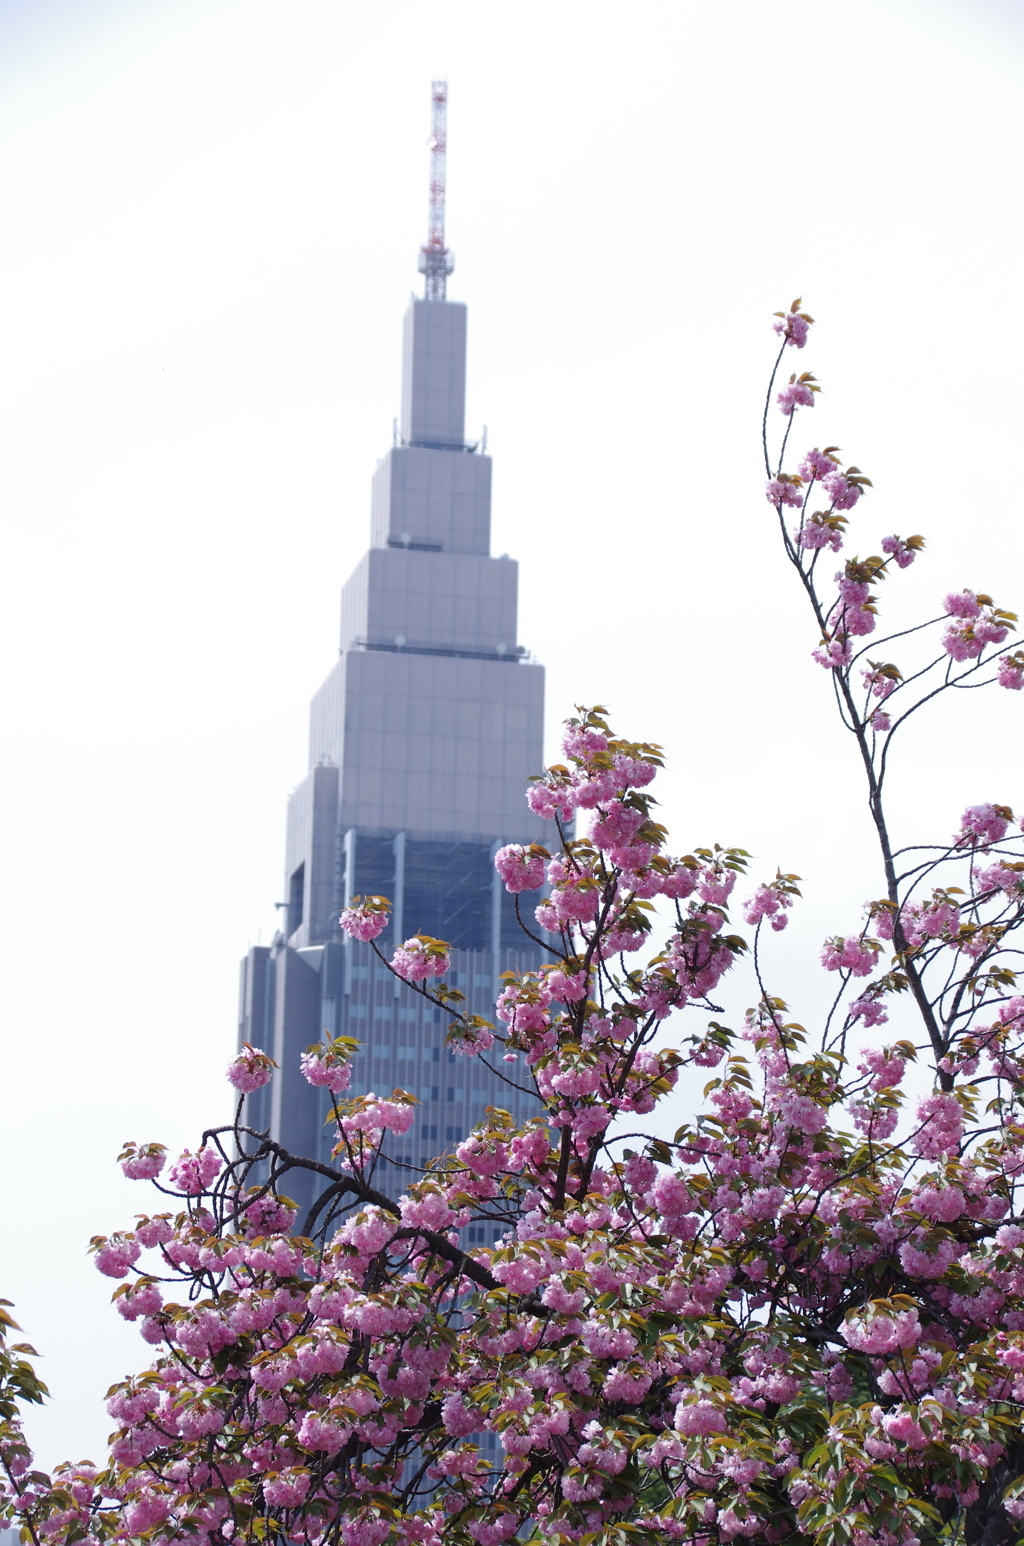 ドコモタワーと八重桜